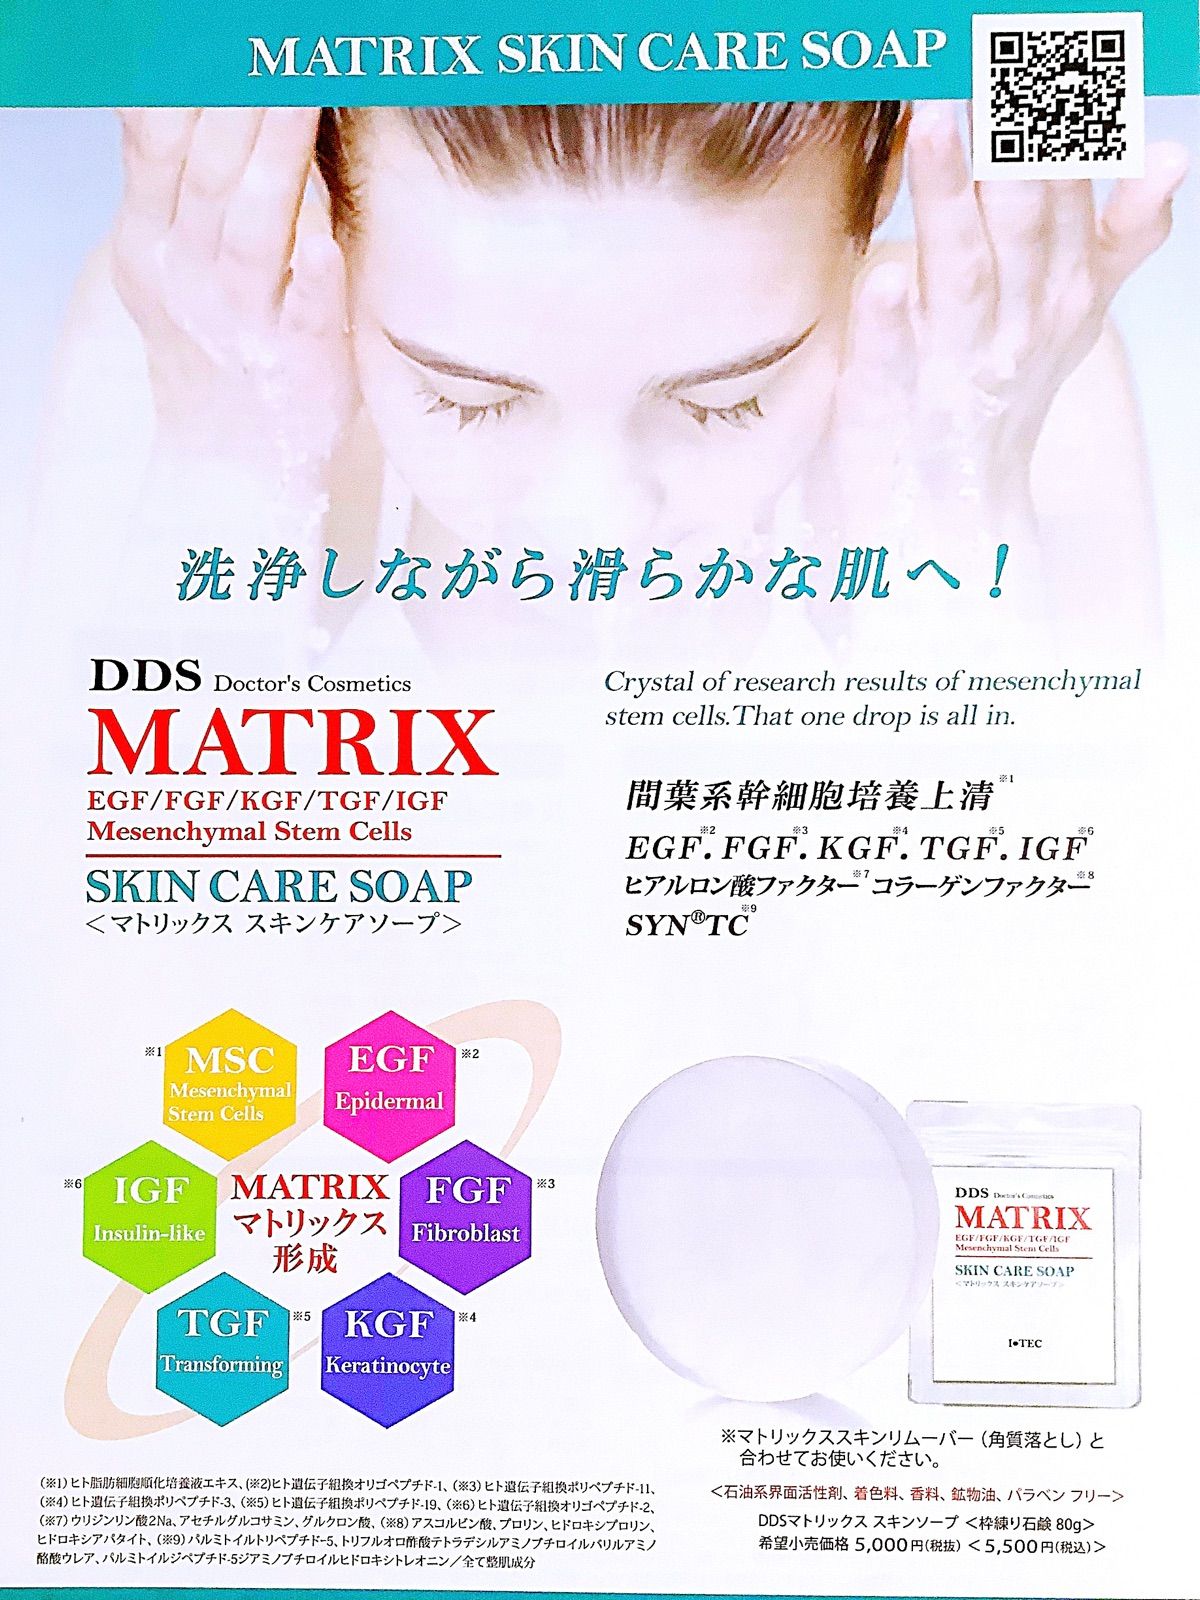 DDS マトリックス スキンケアソープ 粘り石鹸 80g 2個 - 基礎化粧品